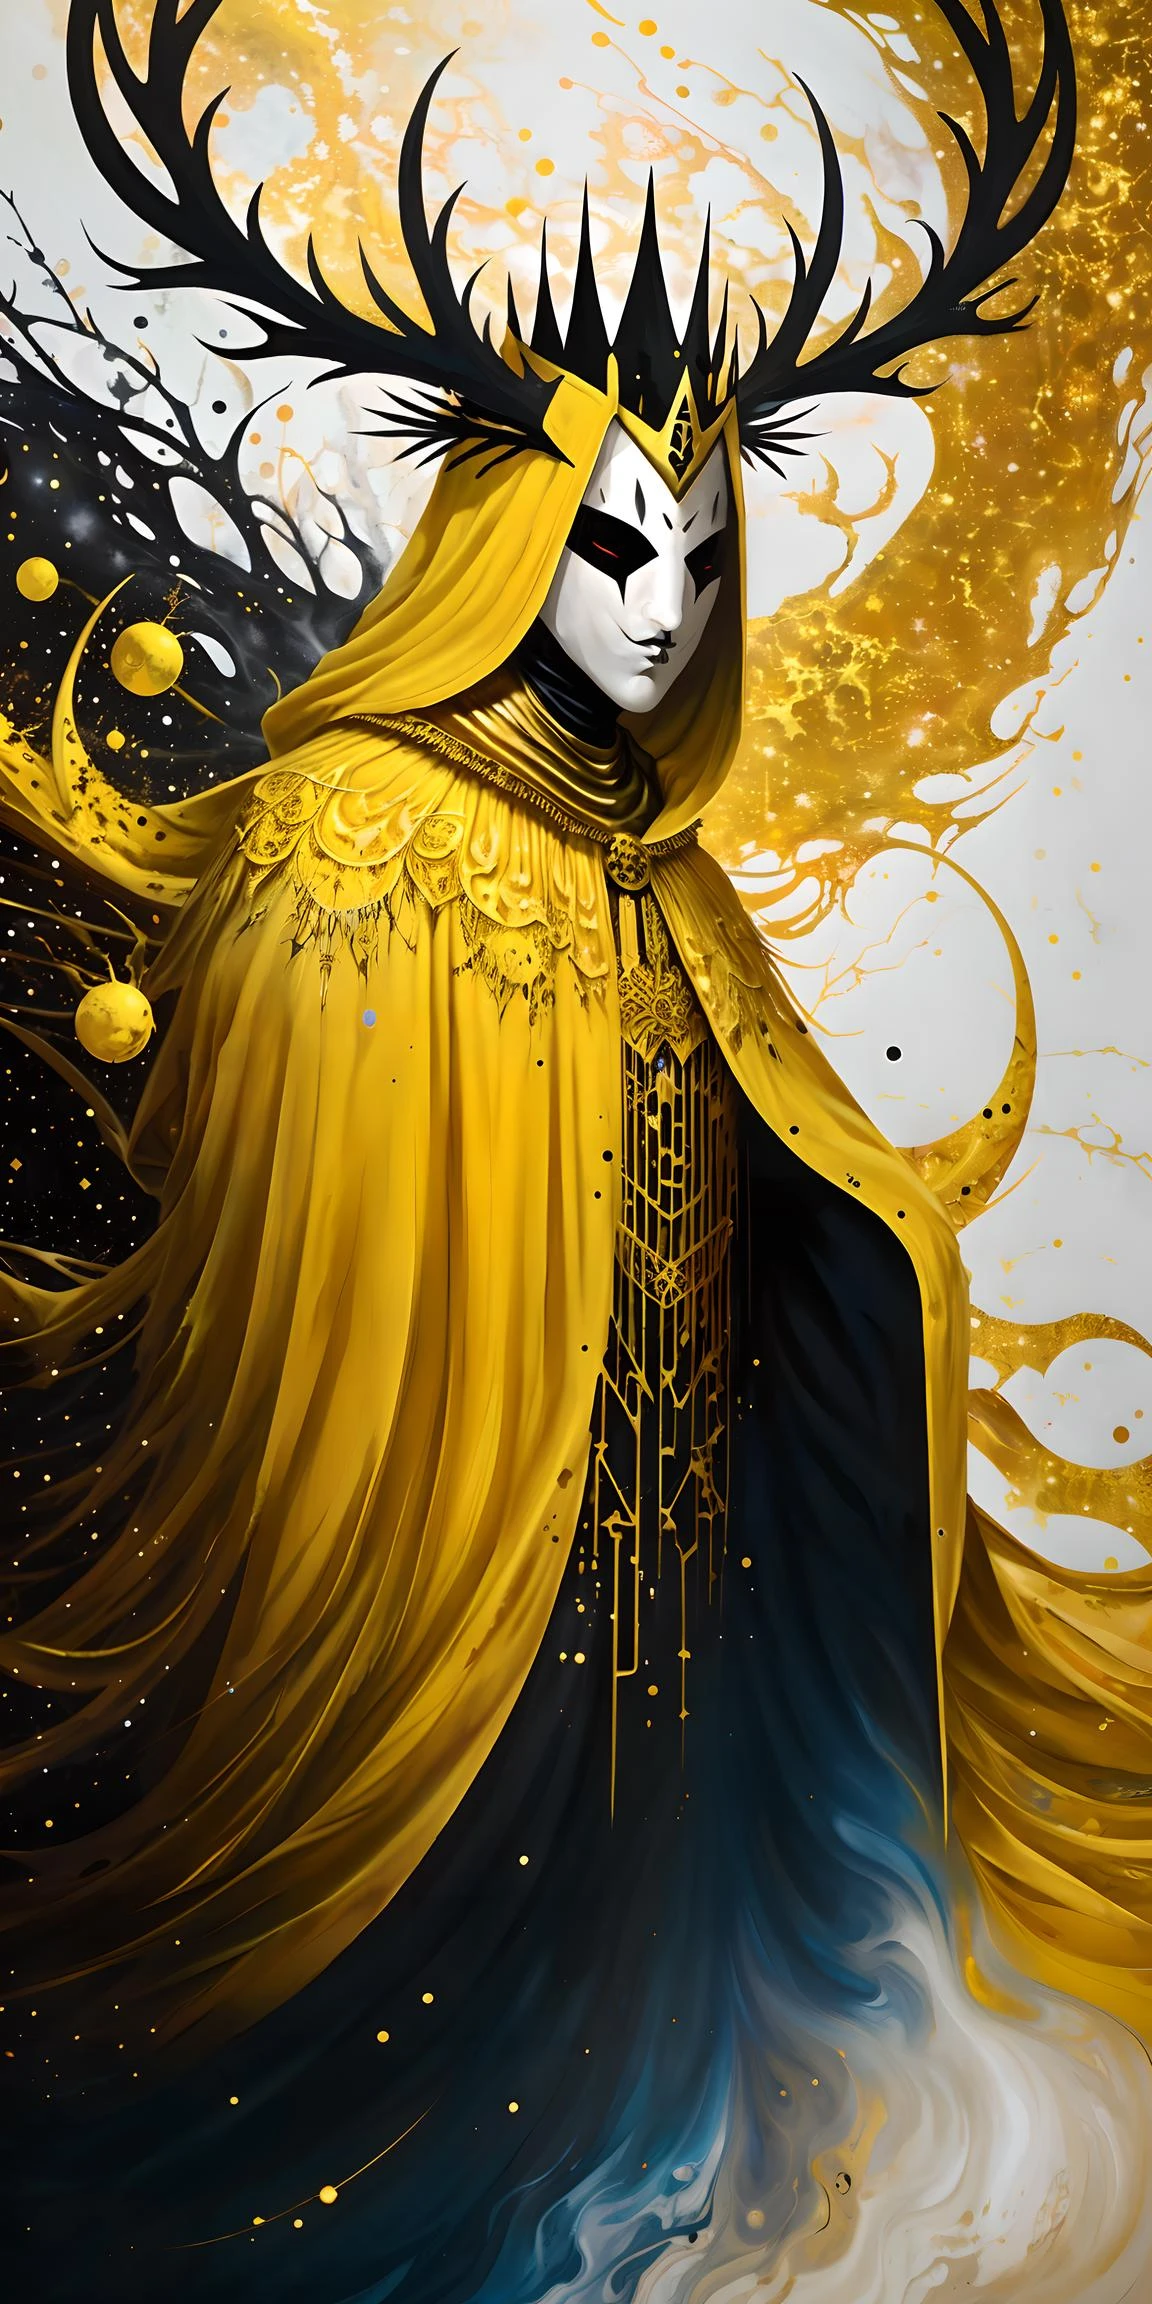 لوحة سريالية متناثرة من الطلاء للملك باللون الأصفر وهو يرتدي عباءة وقناع, قرون, تاج, الخلفية الكونية, نظام الألوان الذهبي والأبيض والأسود, (خلاصة:1.2) 